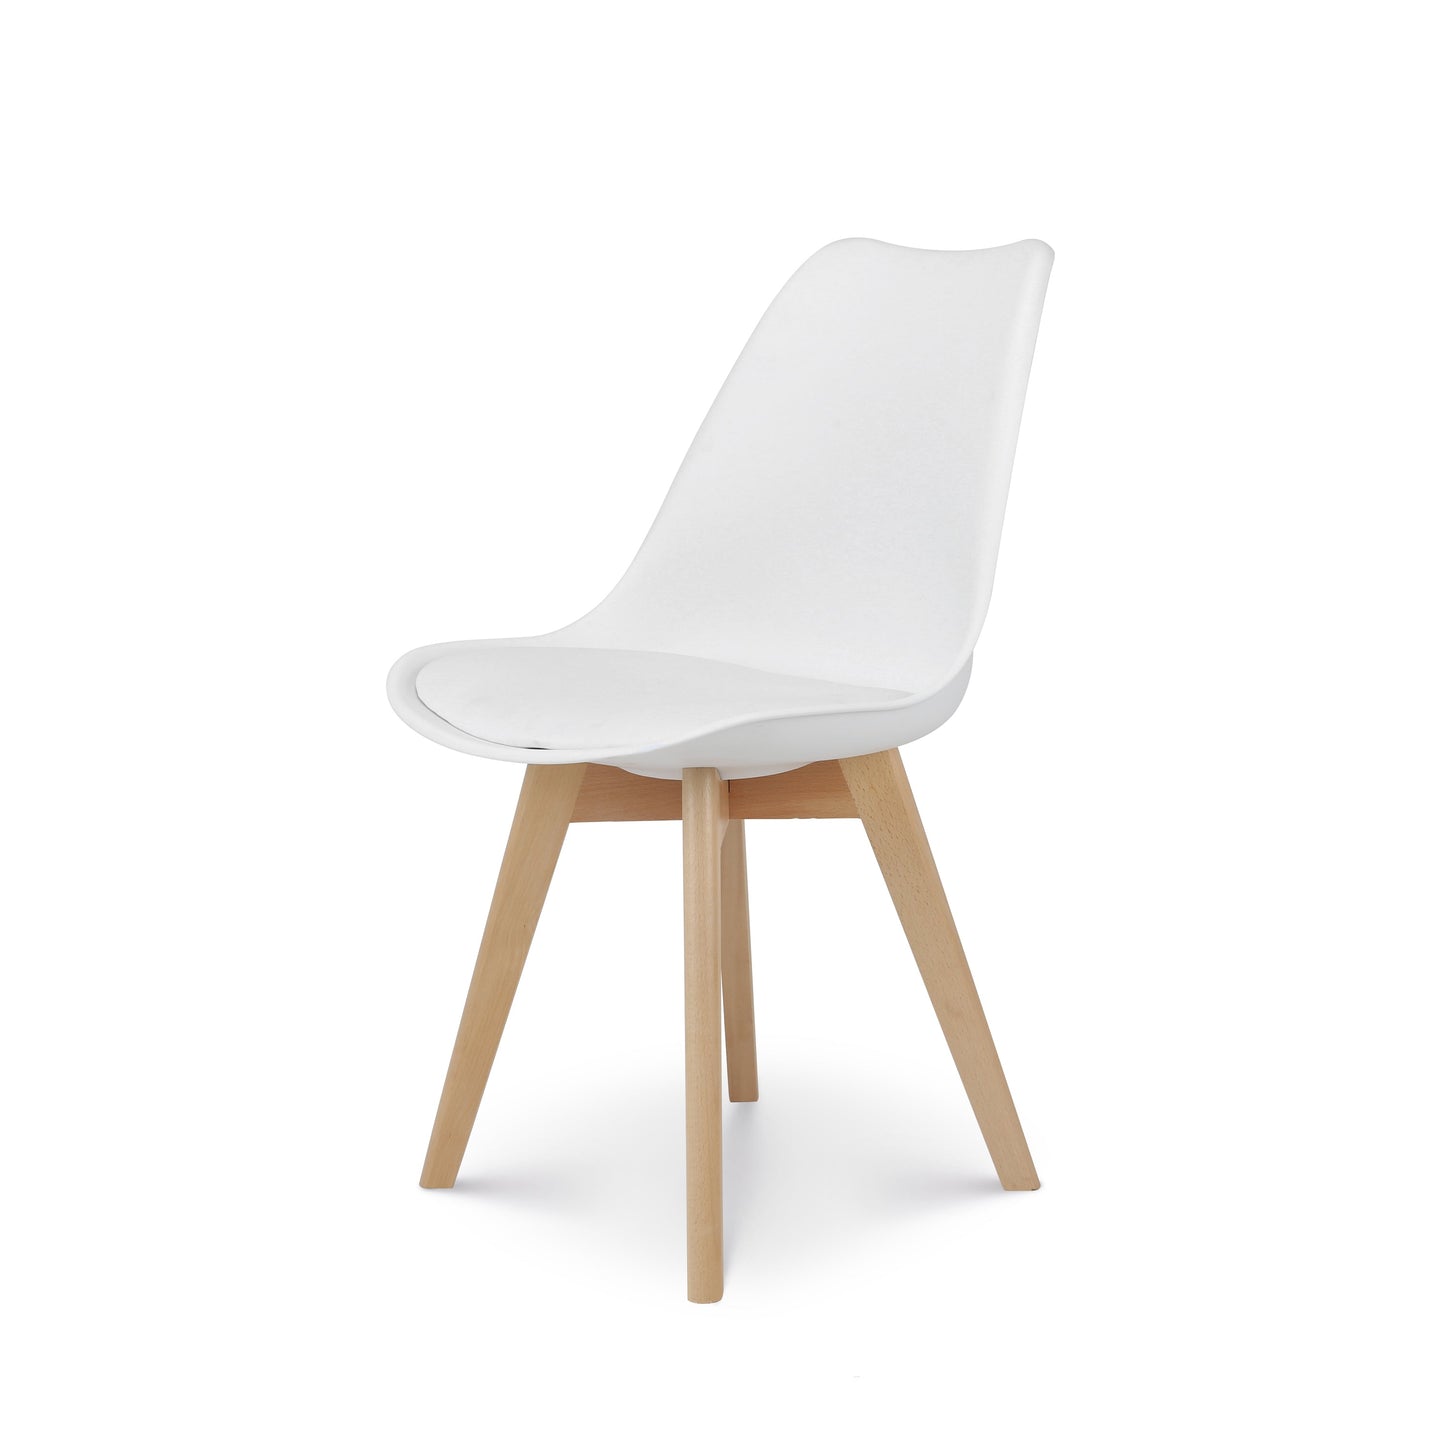 Chaise style scandinave VICTOIRE - Coque en résine blanche rembourrée et pieds en bois naturel